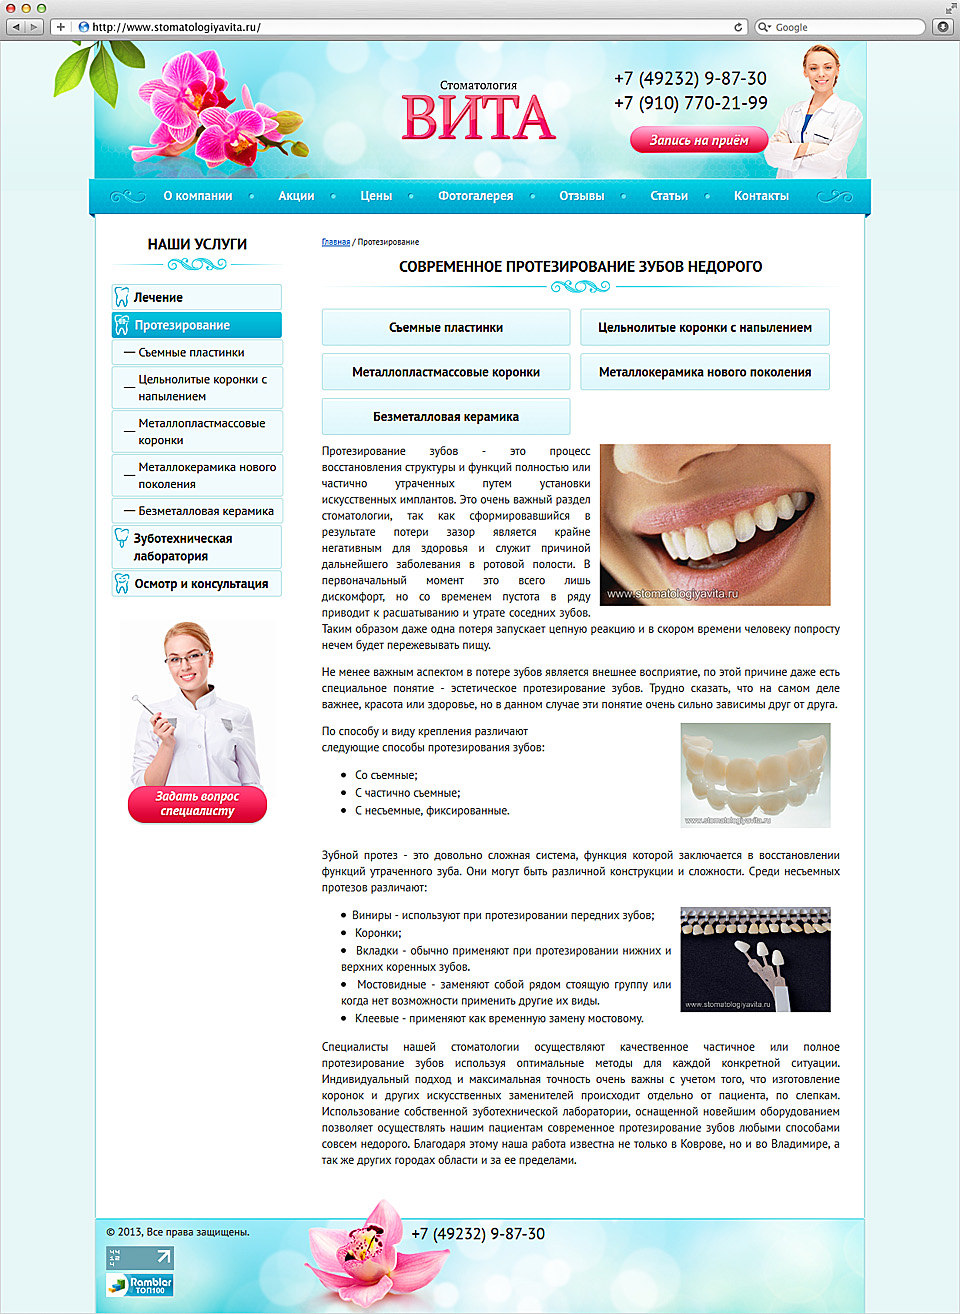 Сайт стоматологии "Вита" 4